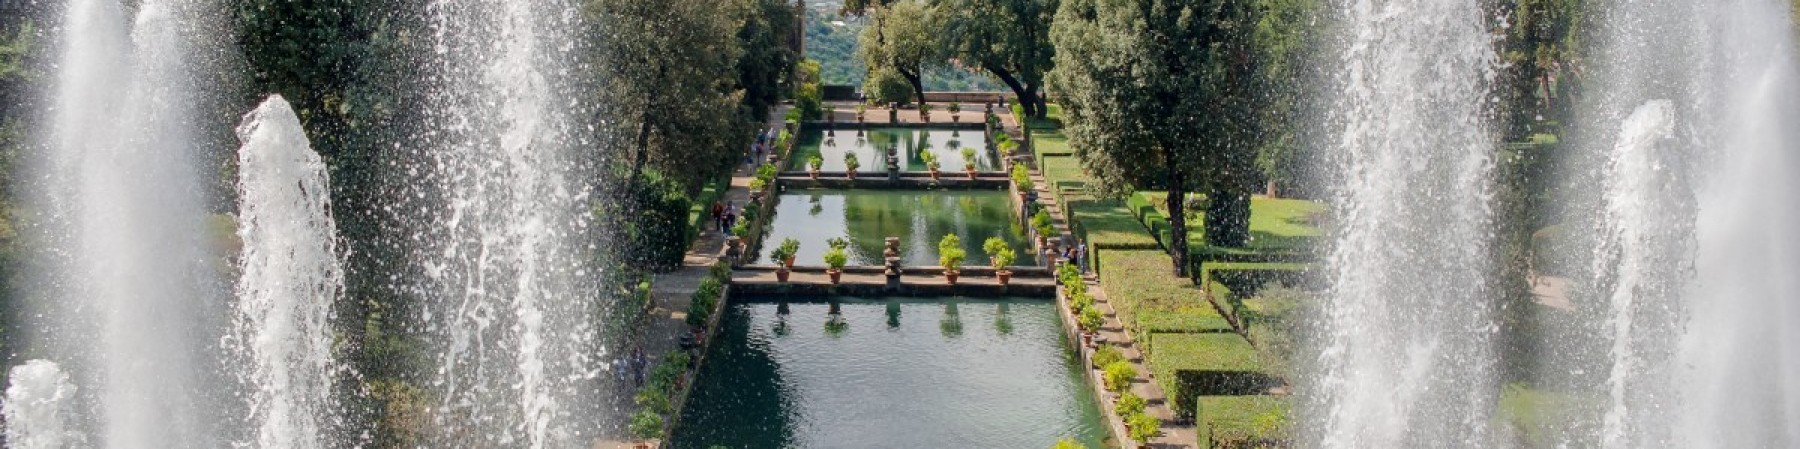 Private Tour - The Villa d'Este of Tivoli